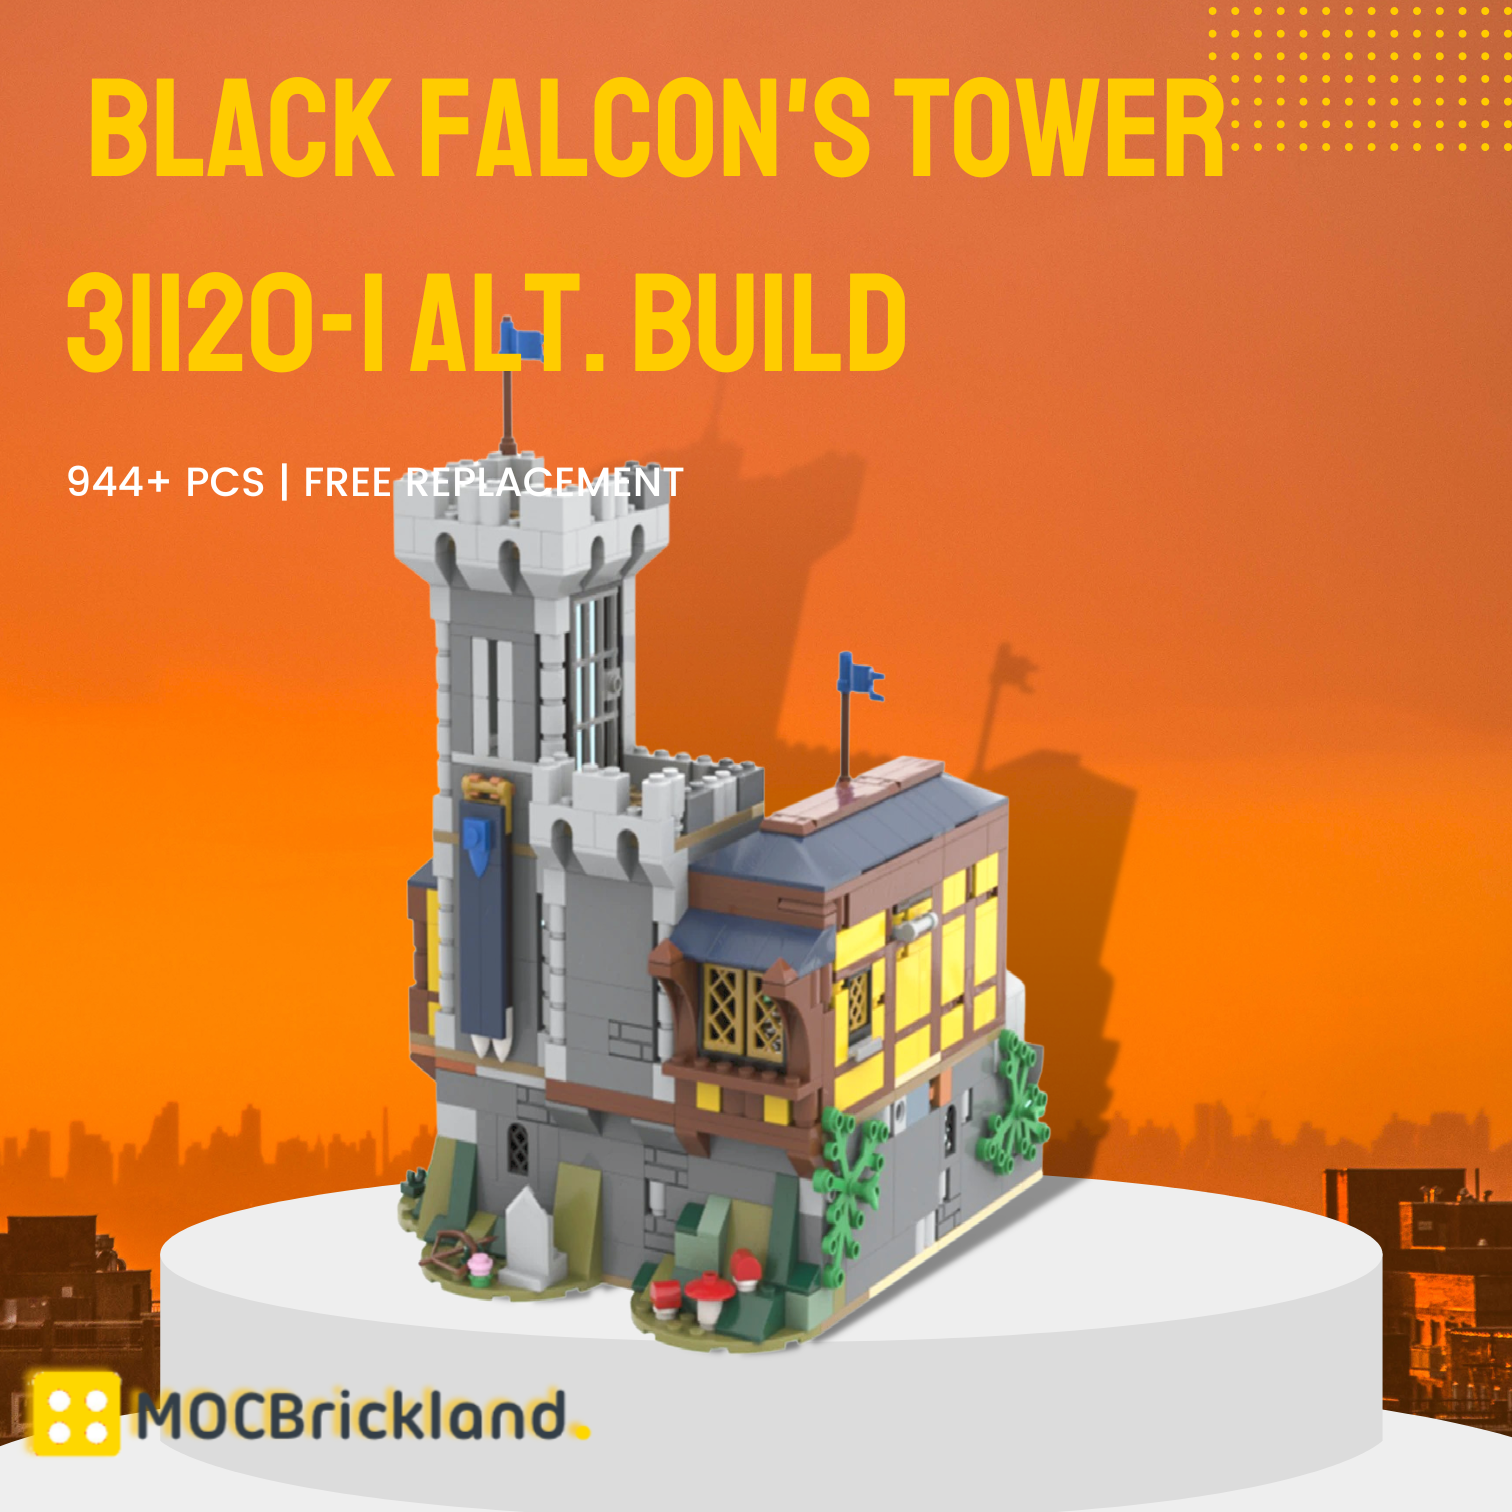 Black Falcon's Tower 31120-1 Alt. Build MOC-115655 Creator With 944PCS